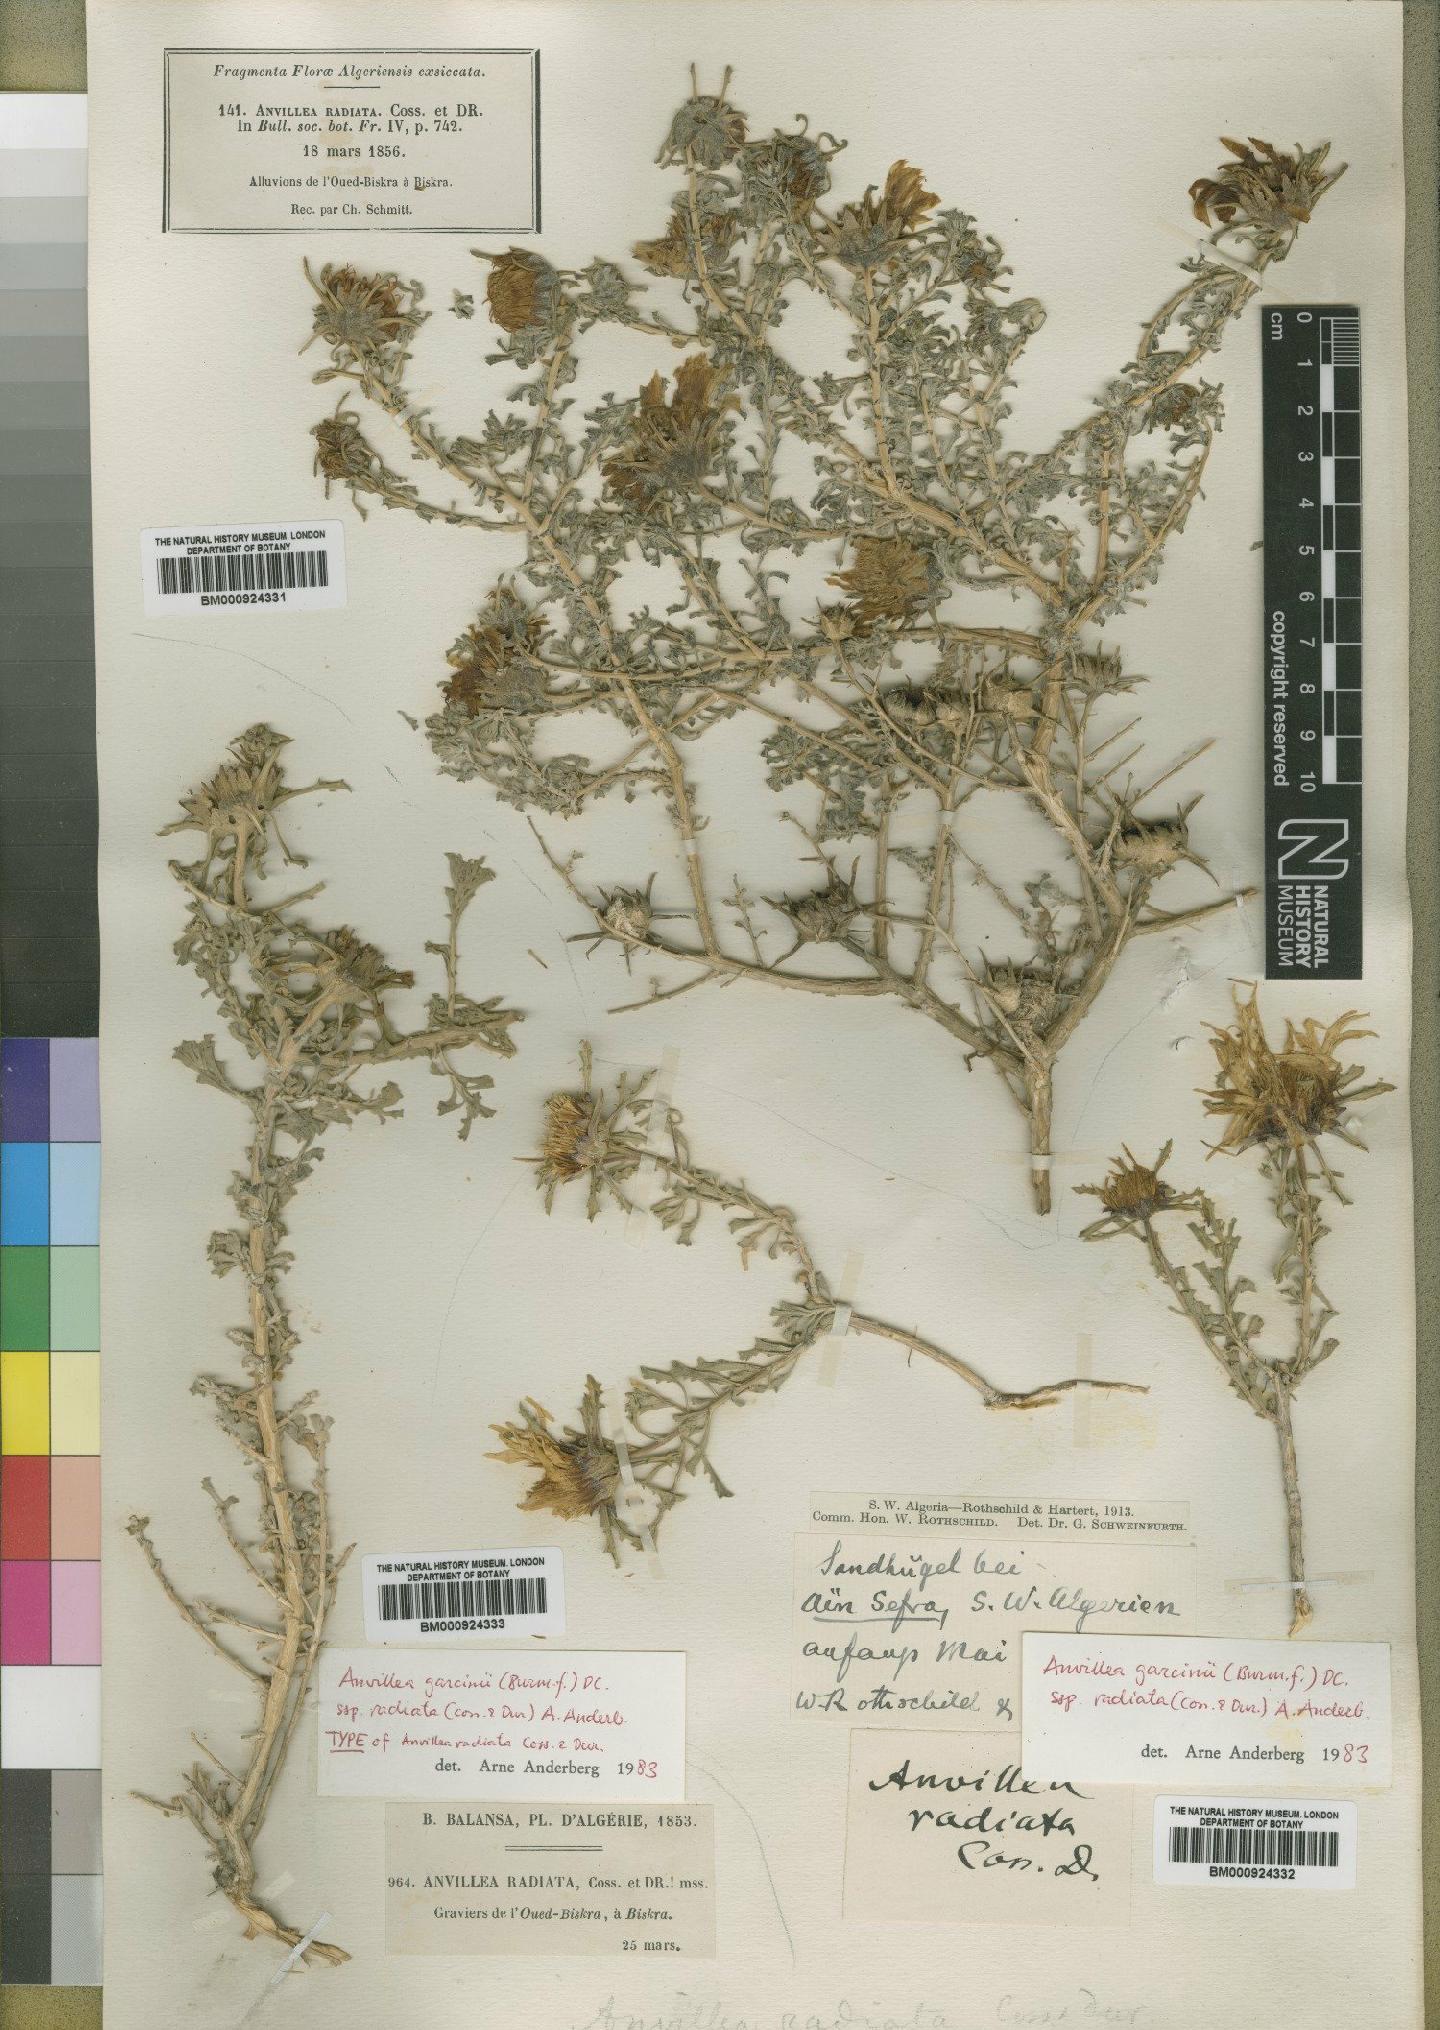 To NHMUK collection (Anvillea garcinii subsp. radiata (Coss. & Durieu) Anderb; NHMUK:ecatalogue:4529361)